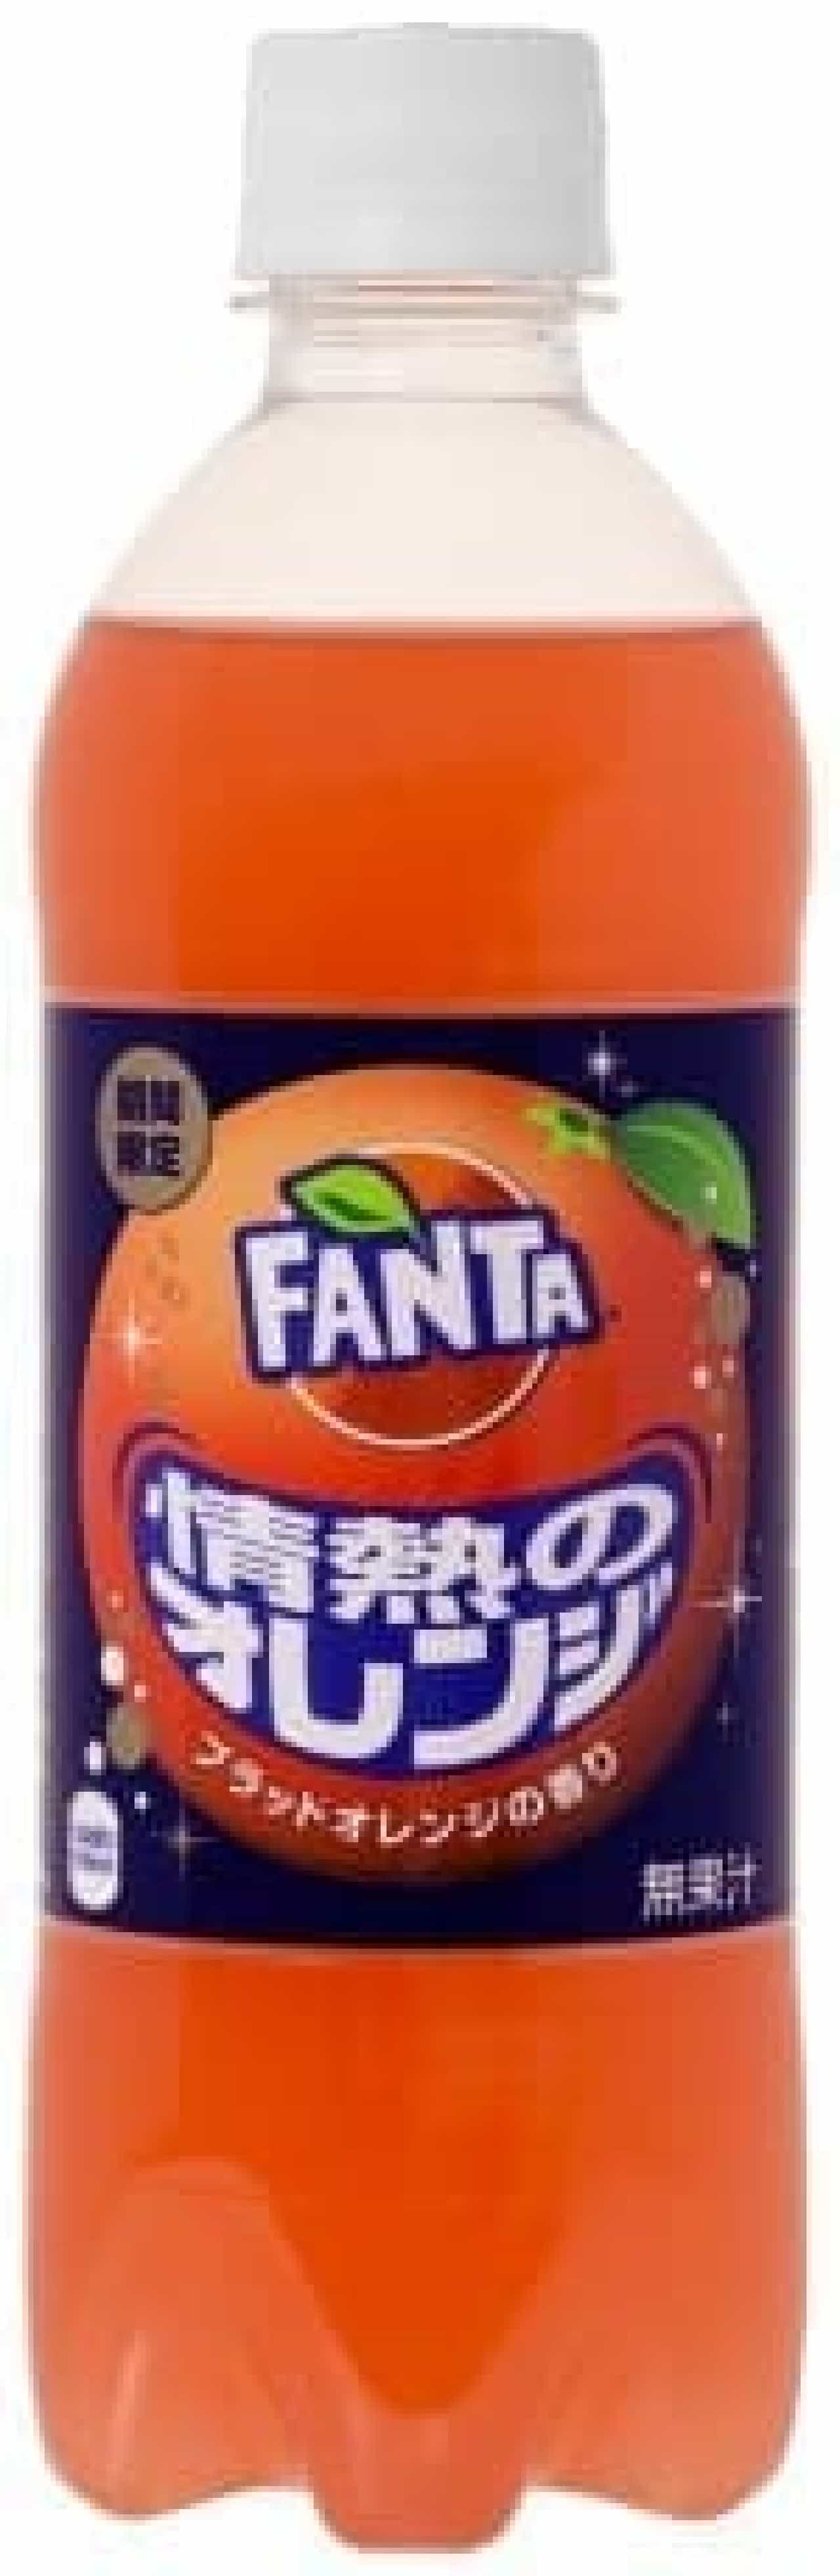 Fanta Passion Orange